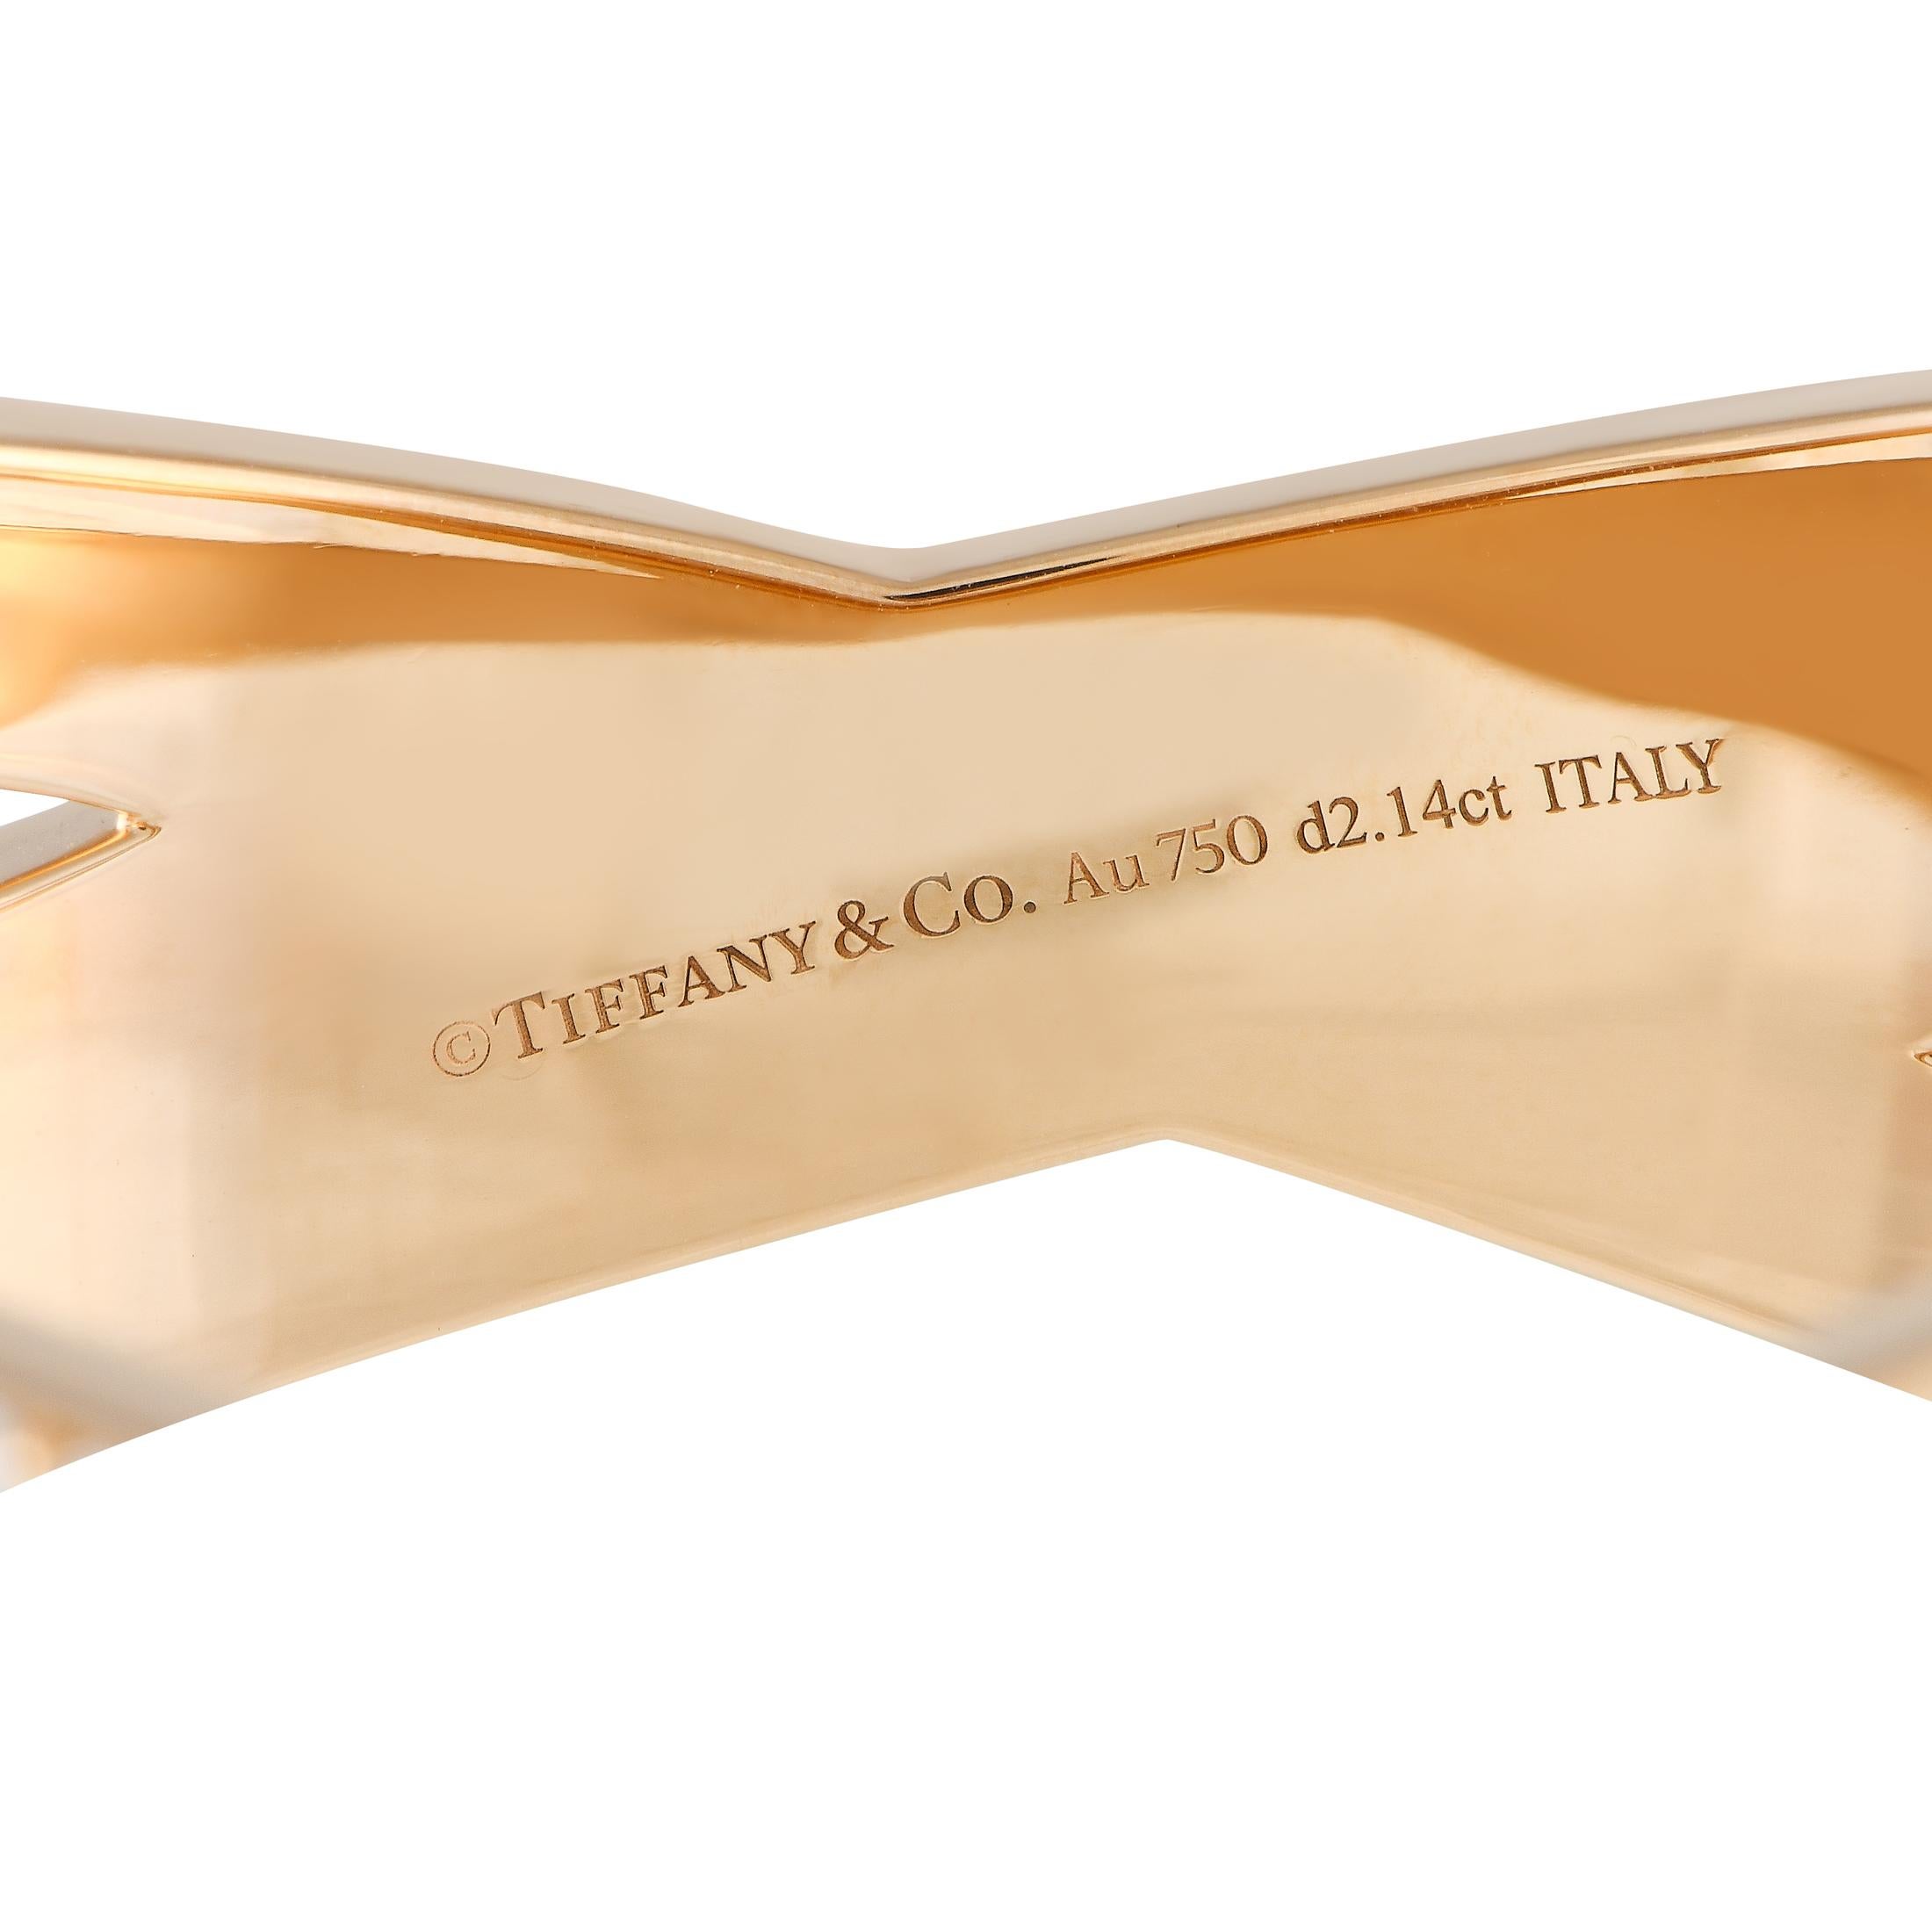 Mit einem kühnen und schönen X-Design ist diese Tiffany & Co. Atlas X Wide Bangle zeigt kantige Eleganz von ihrer besten Seite. Er ist aus 18 Karat Roségold gefertigt und mit runden Brillanten besetzt. Die raffinierte Schlichtheit dieses Armreifs